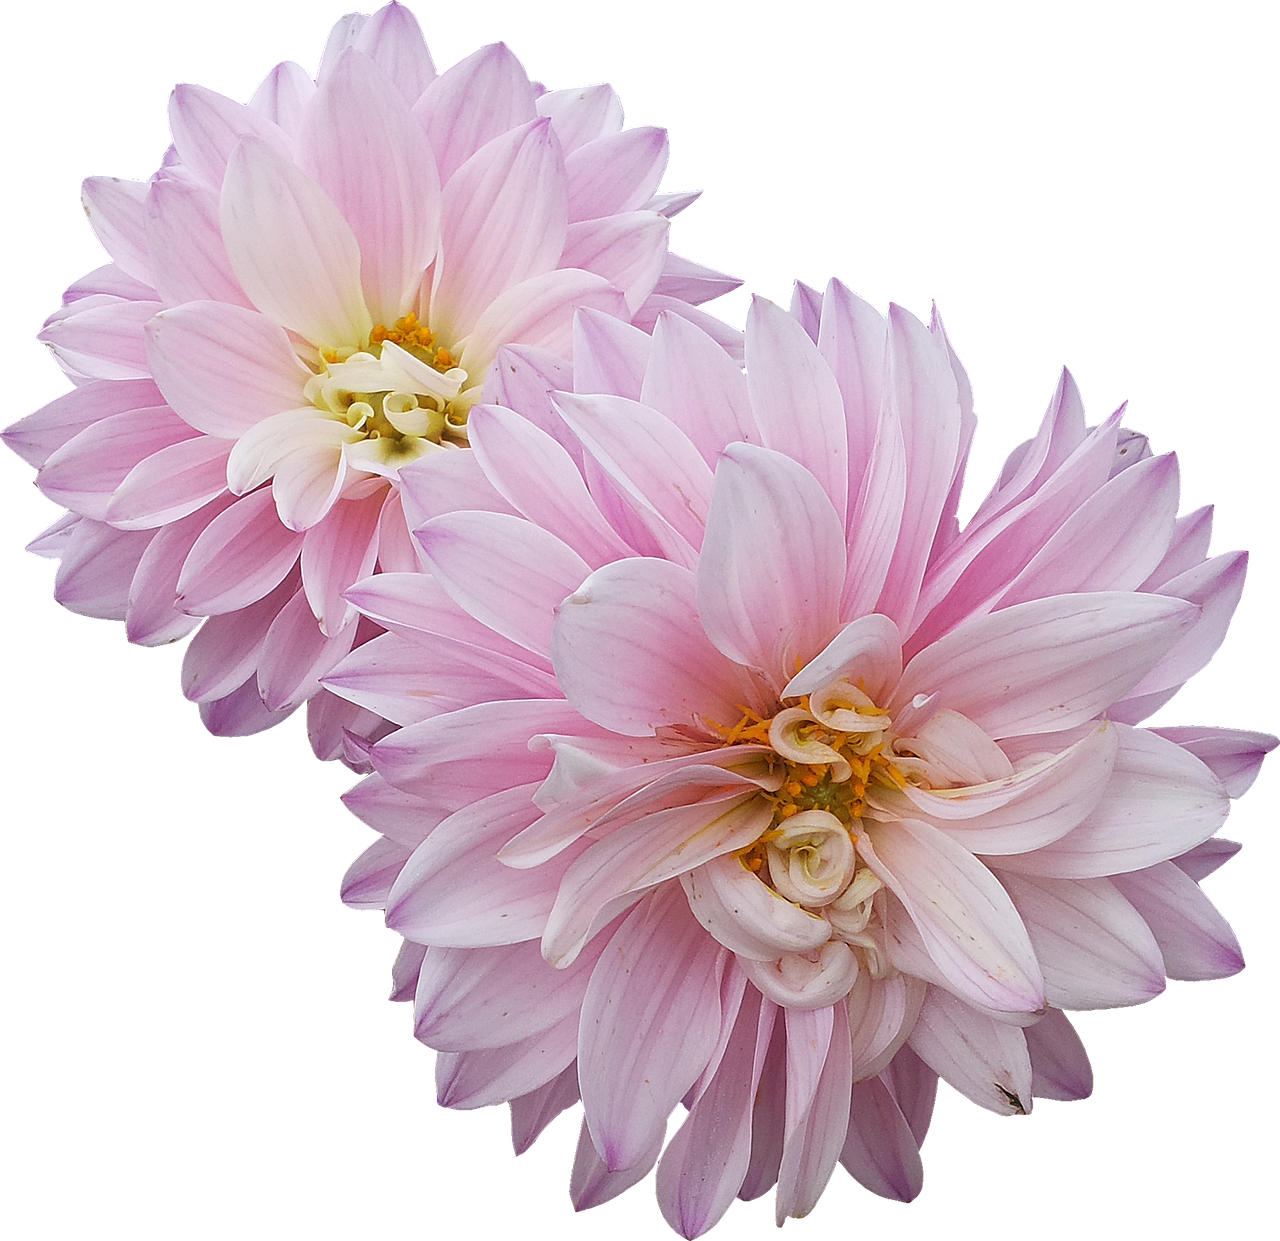 dahlias flowers pink free photo